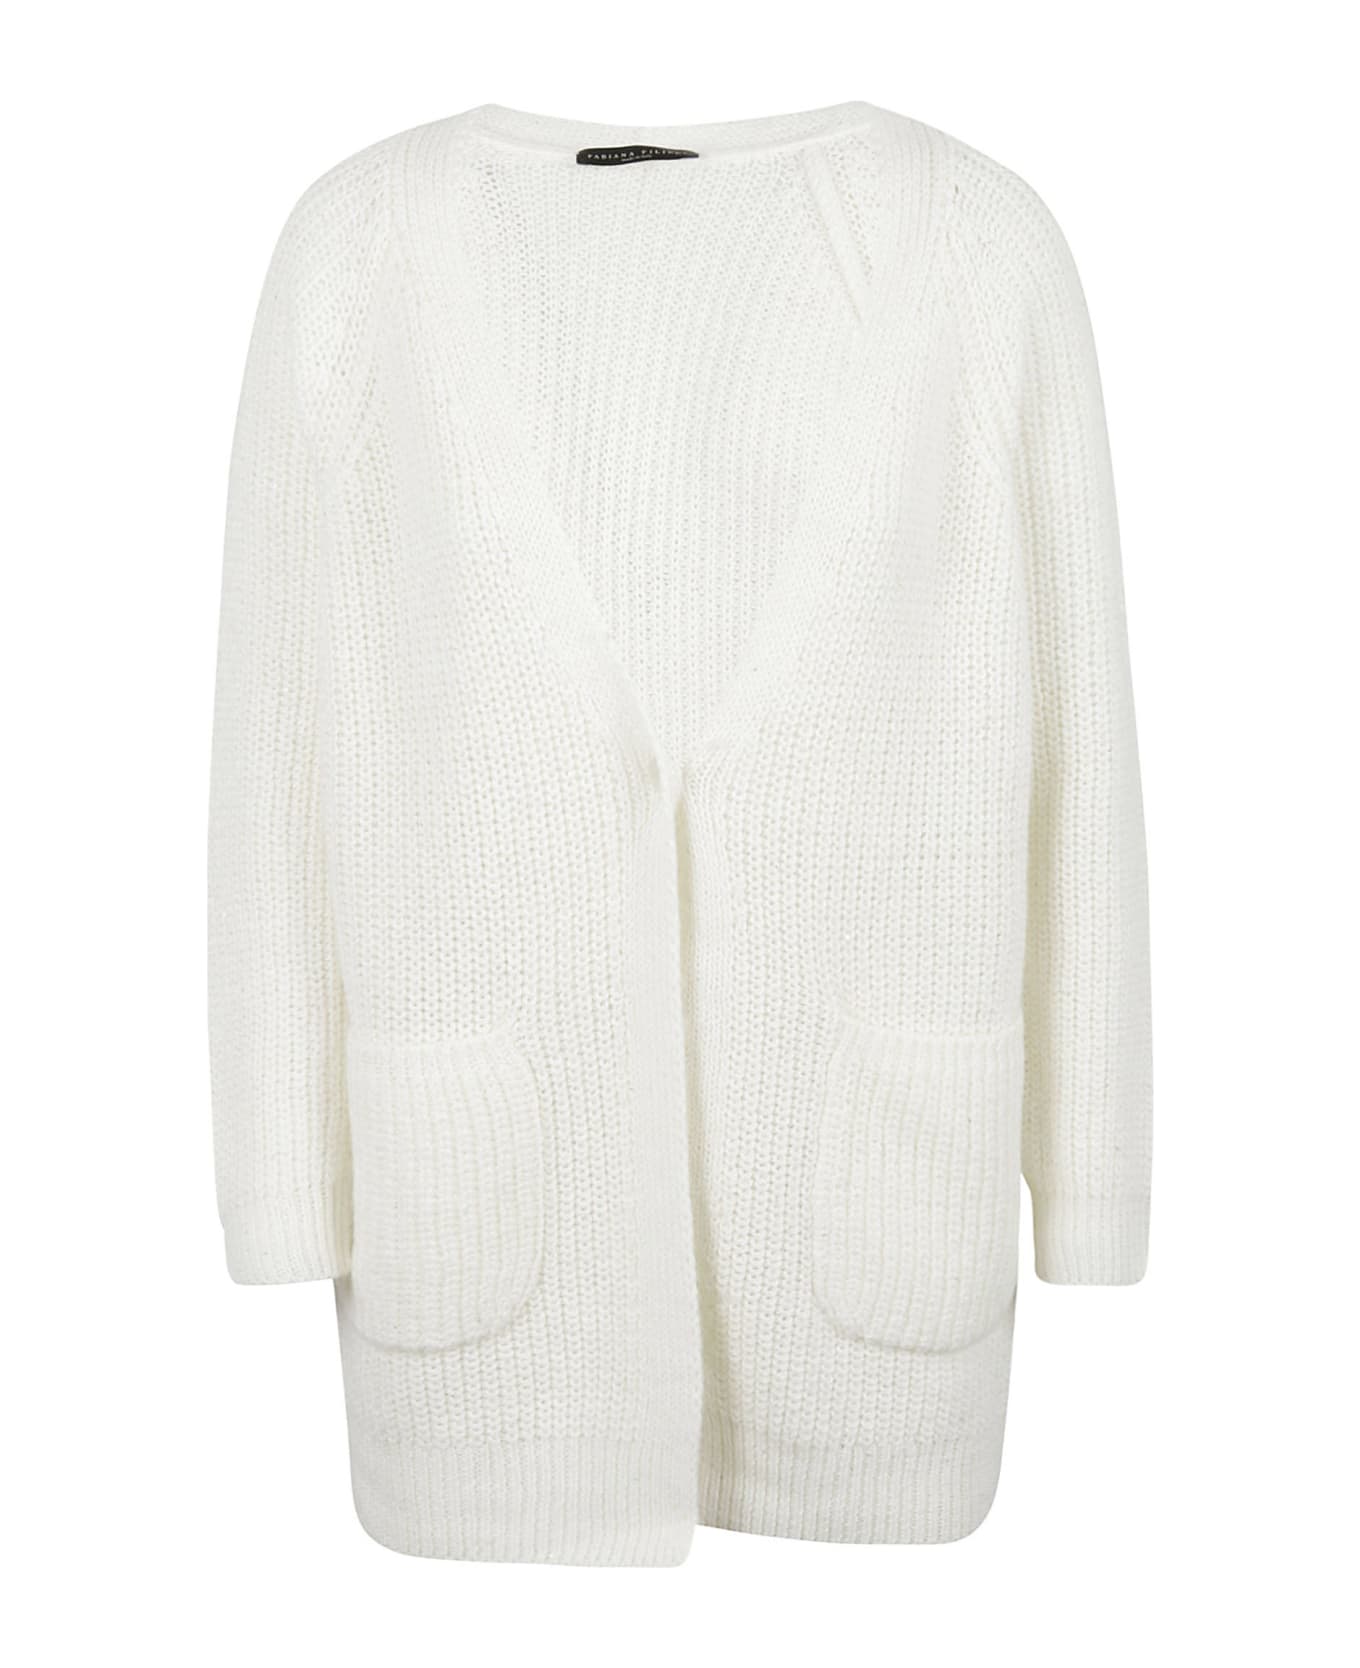 Fabiana Filippi Oversized Knit Plain Cardigan - White